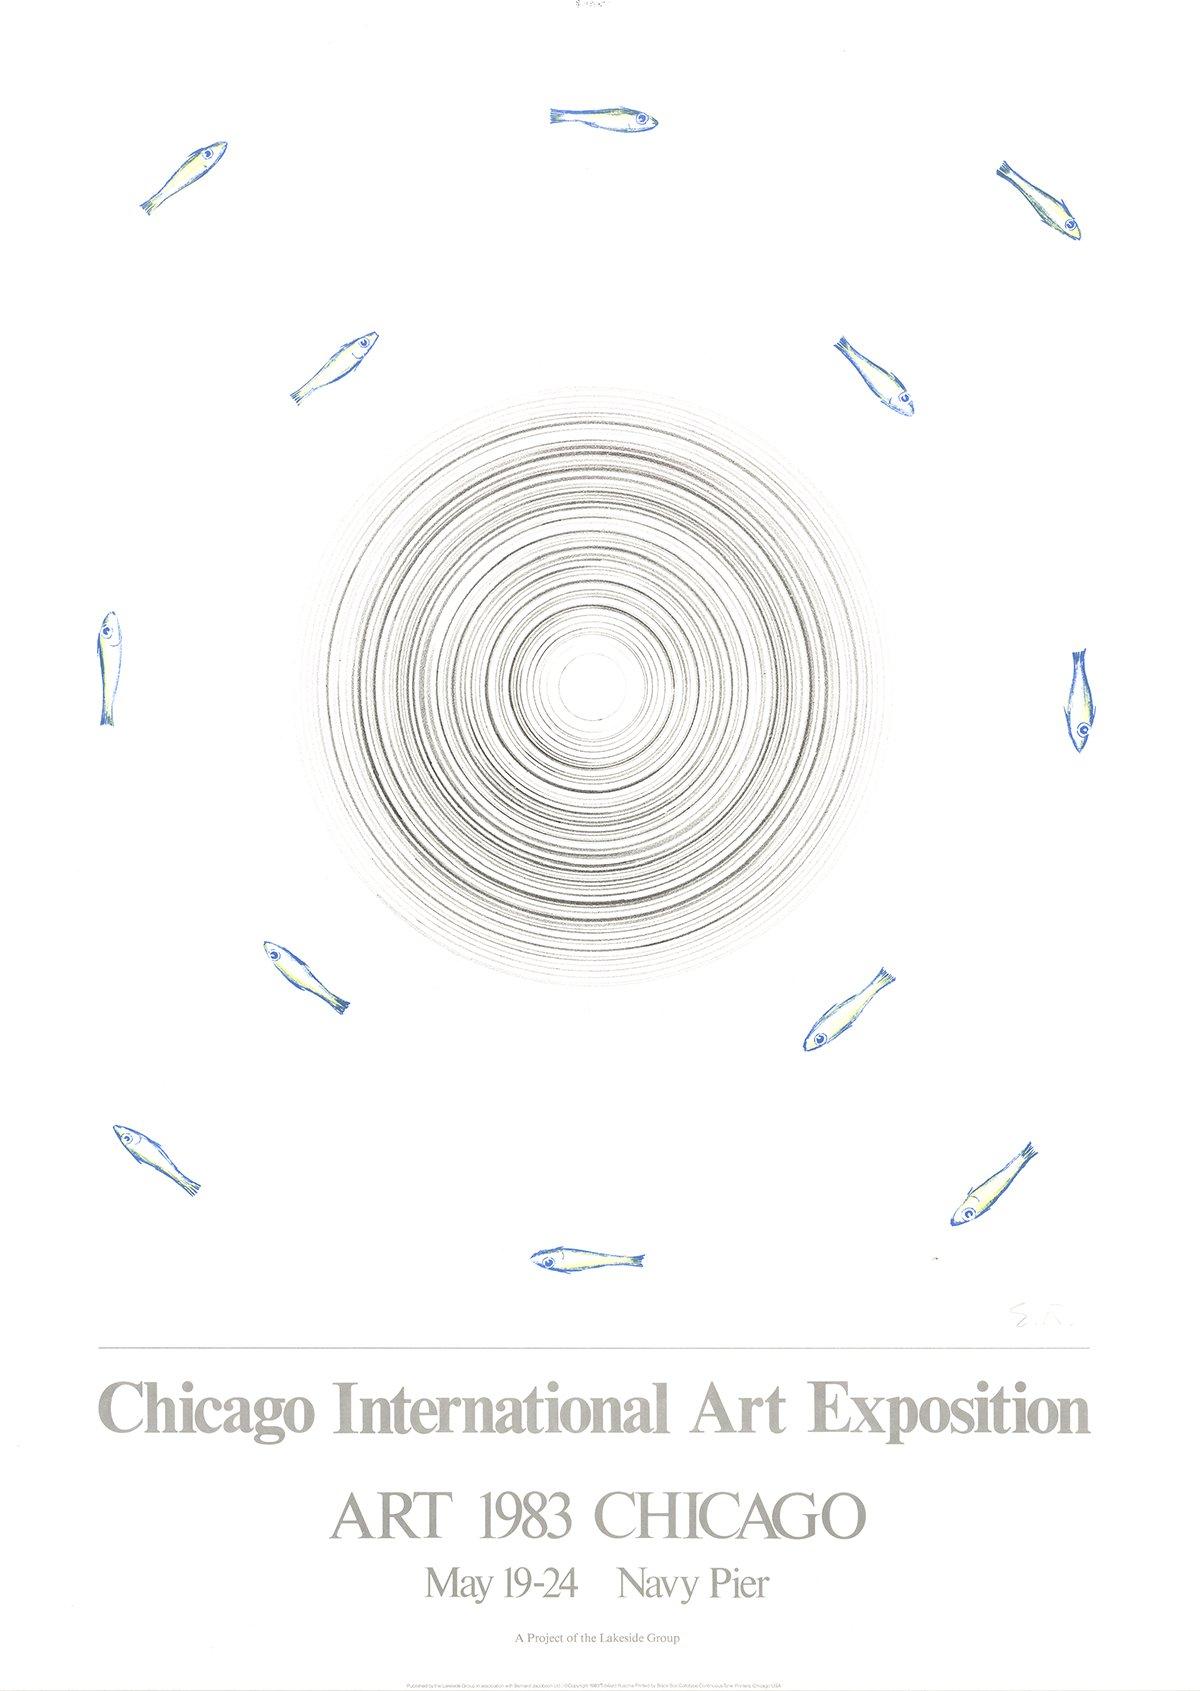 After Edward Ruscha 'Chicago International Art Exposition' 1983, Original - Print by Ed Ruscha